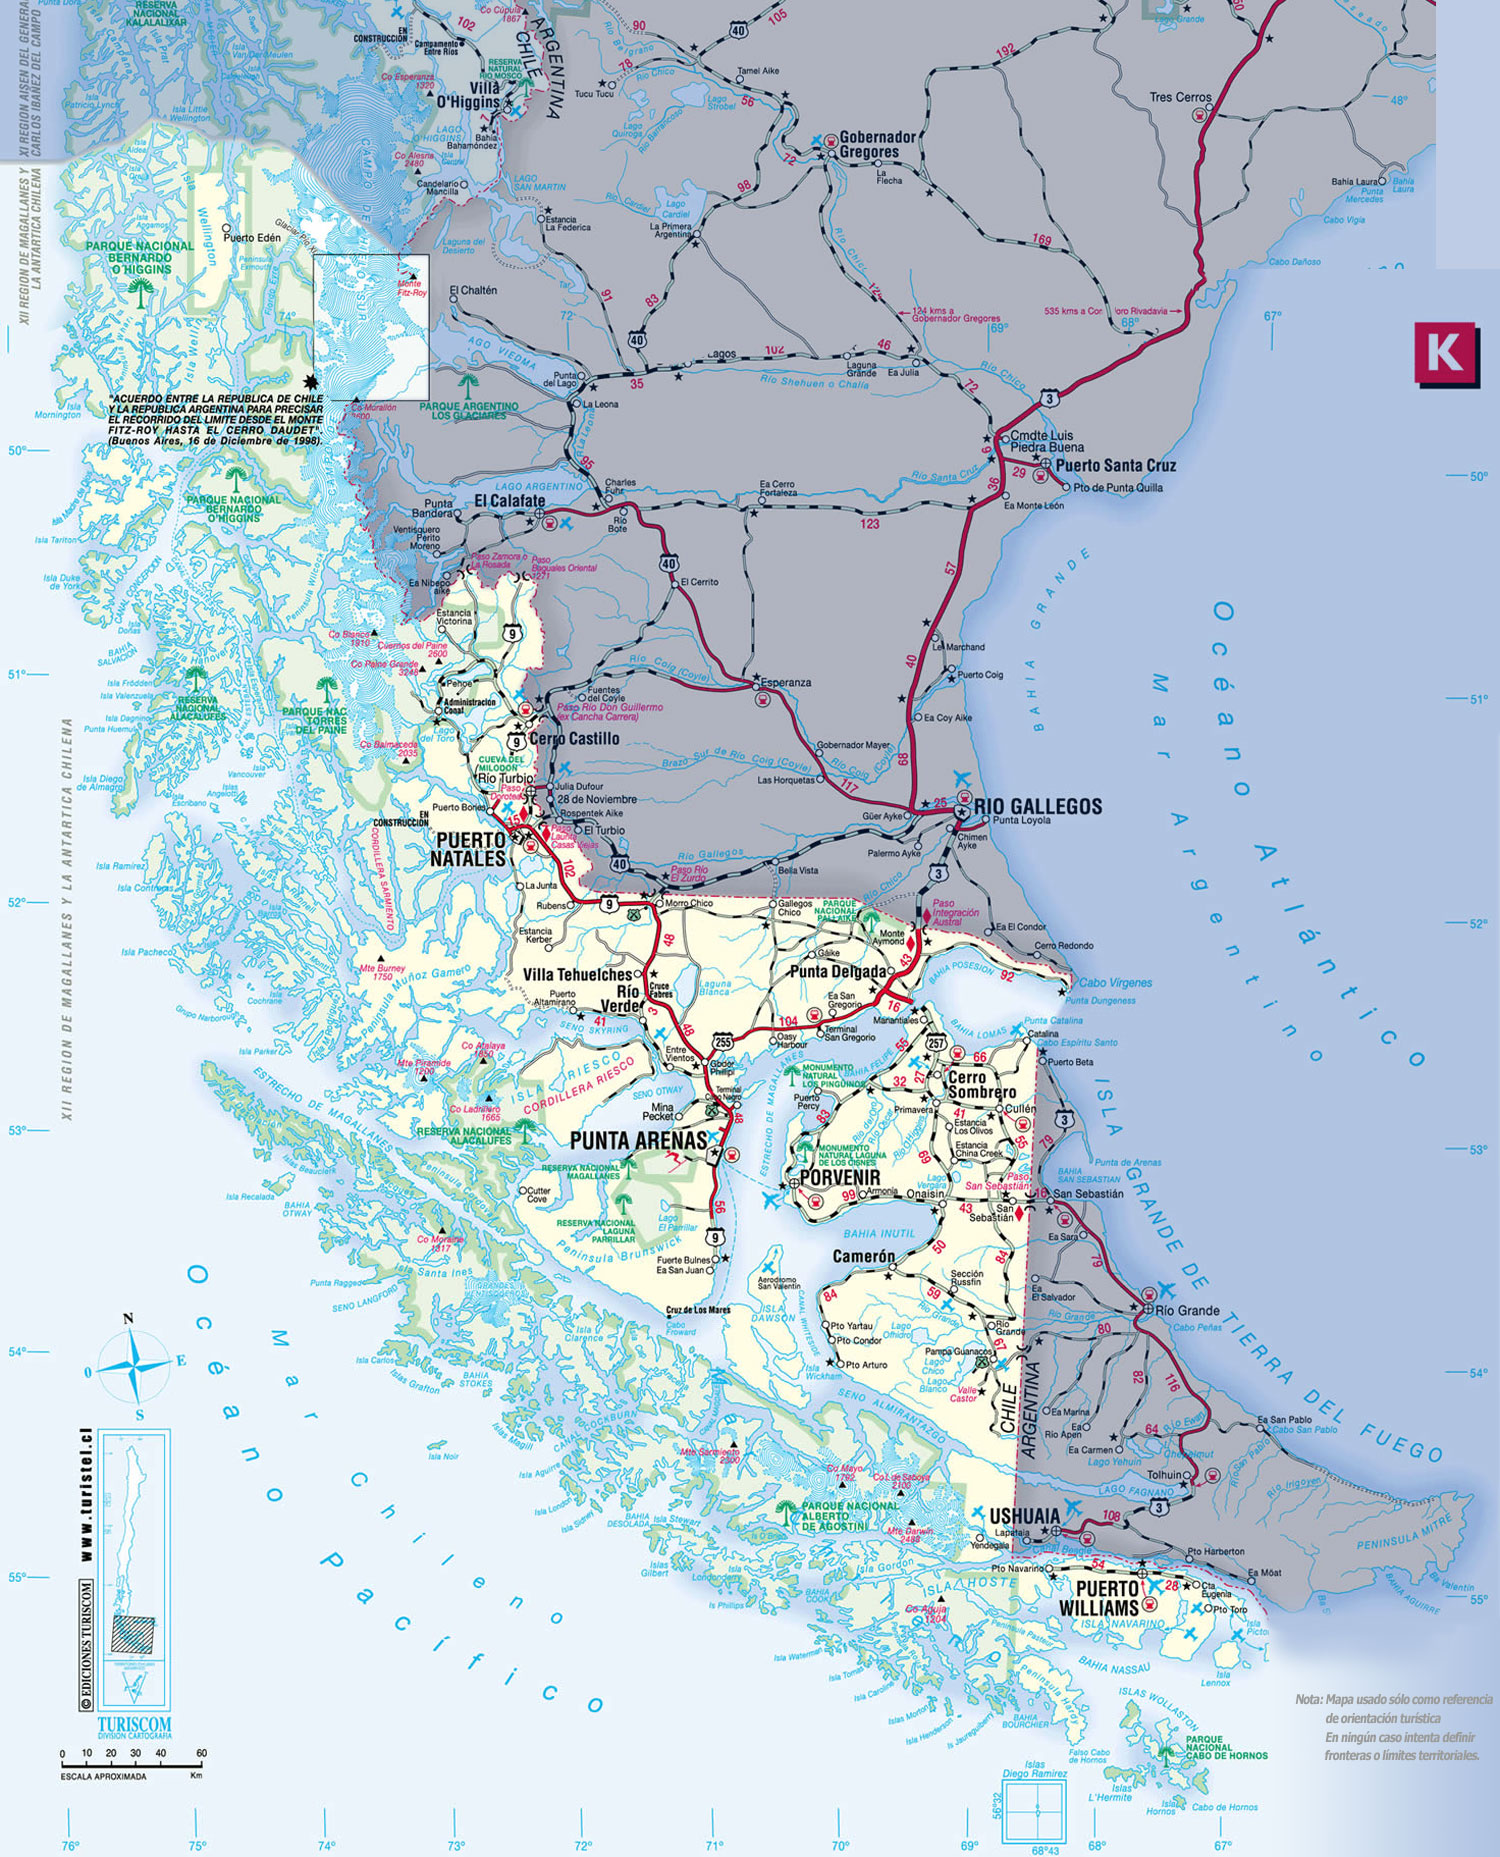 ONEMI declara Alerta Temprana Preventiva para las provincias de Magallanes y Tierra del Fuego por tormentas eléctricas